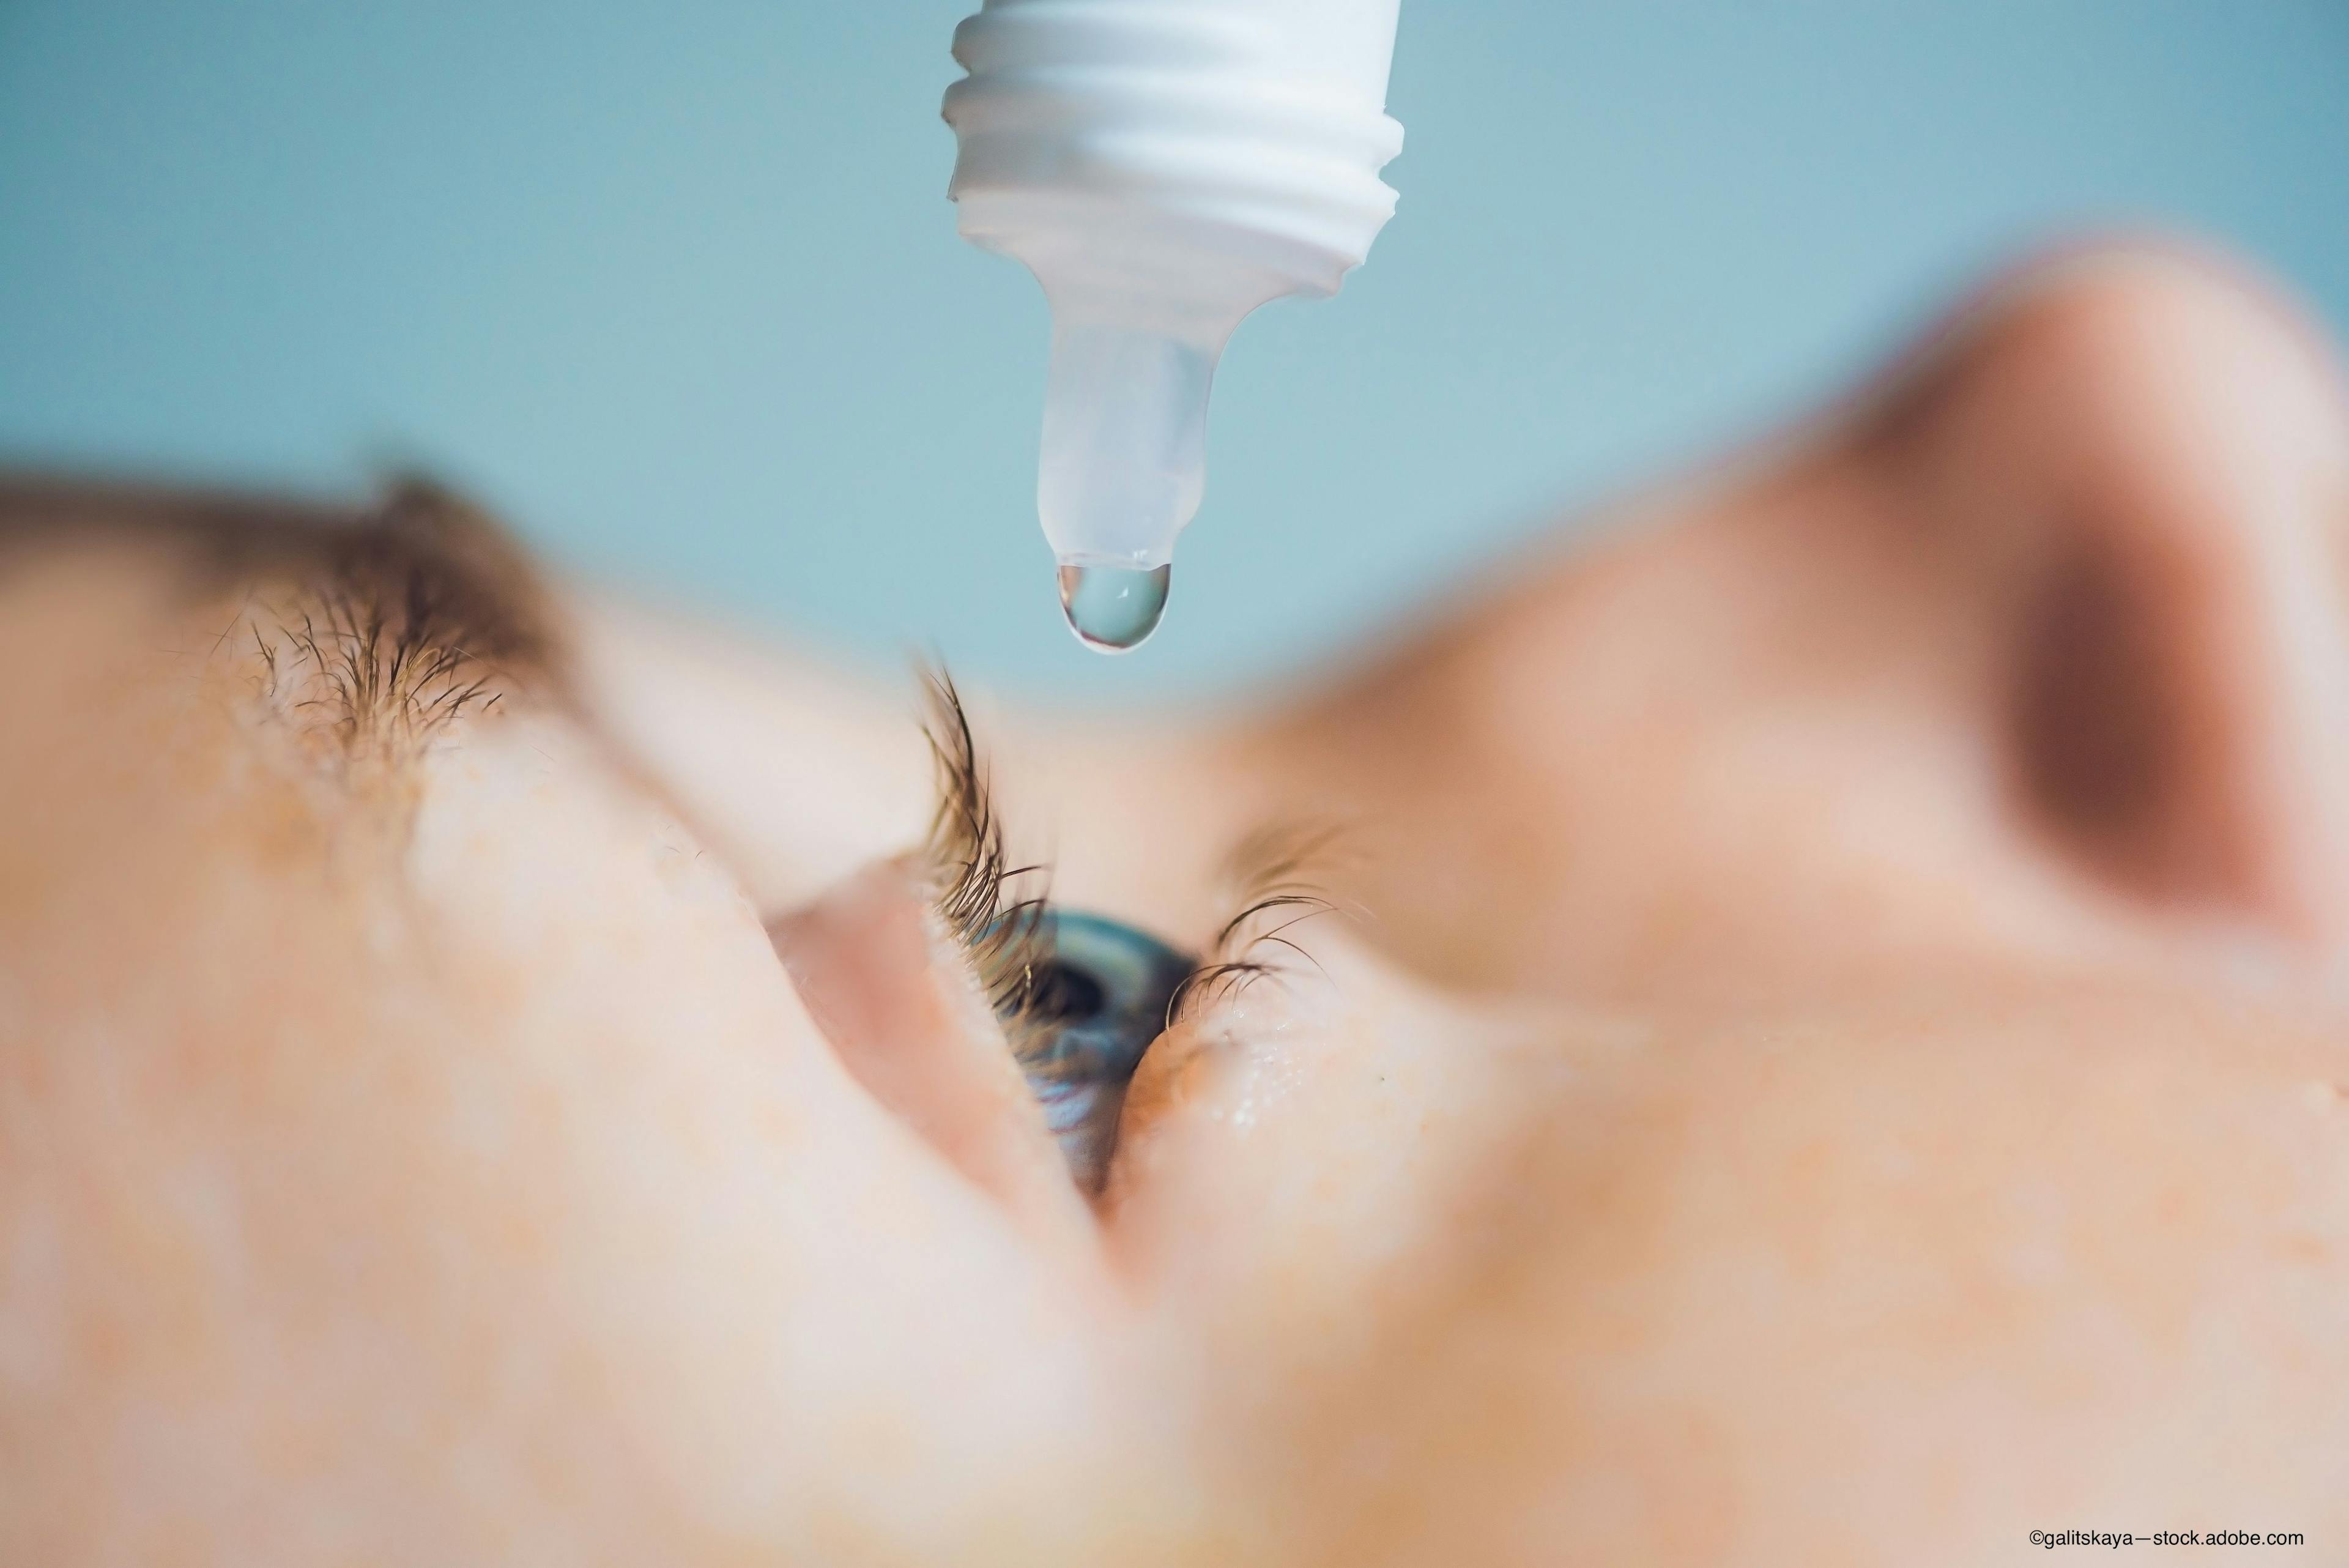 Nyxol eye drop being used in blue eye